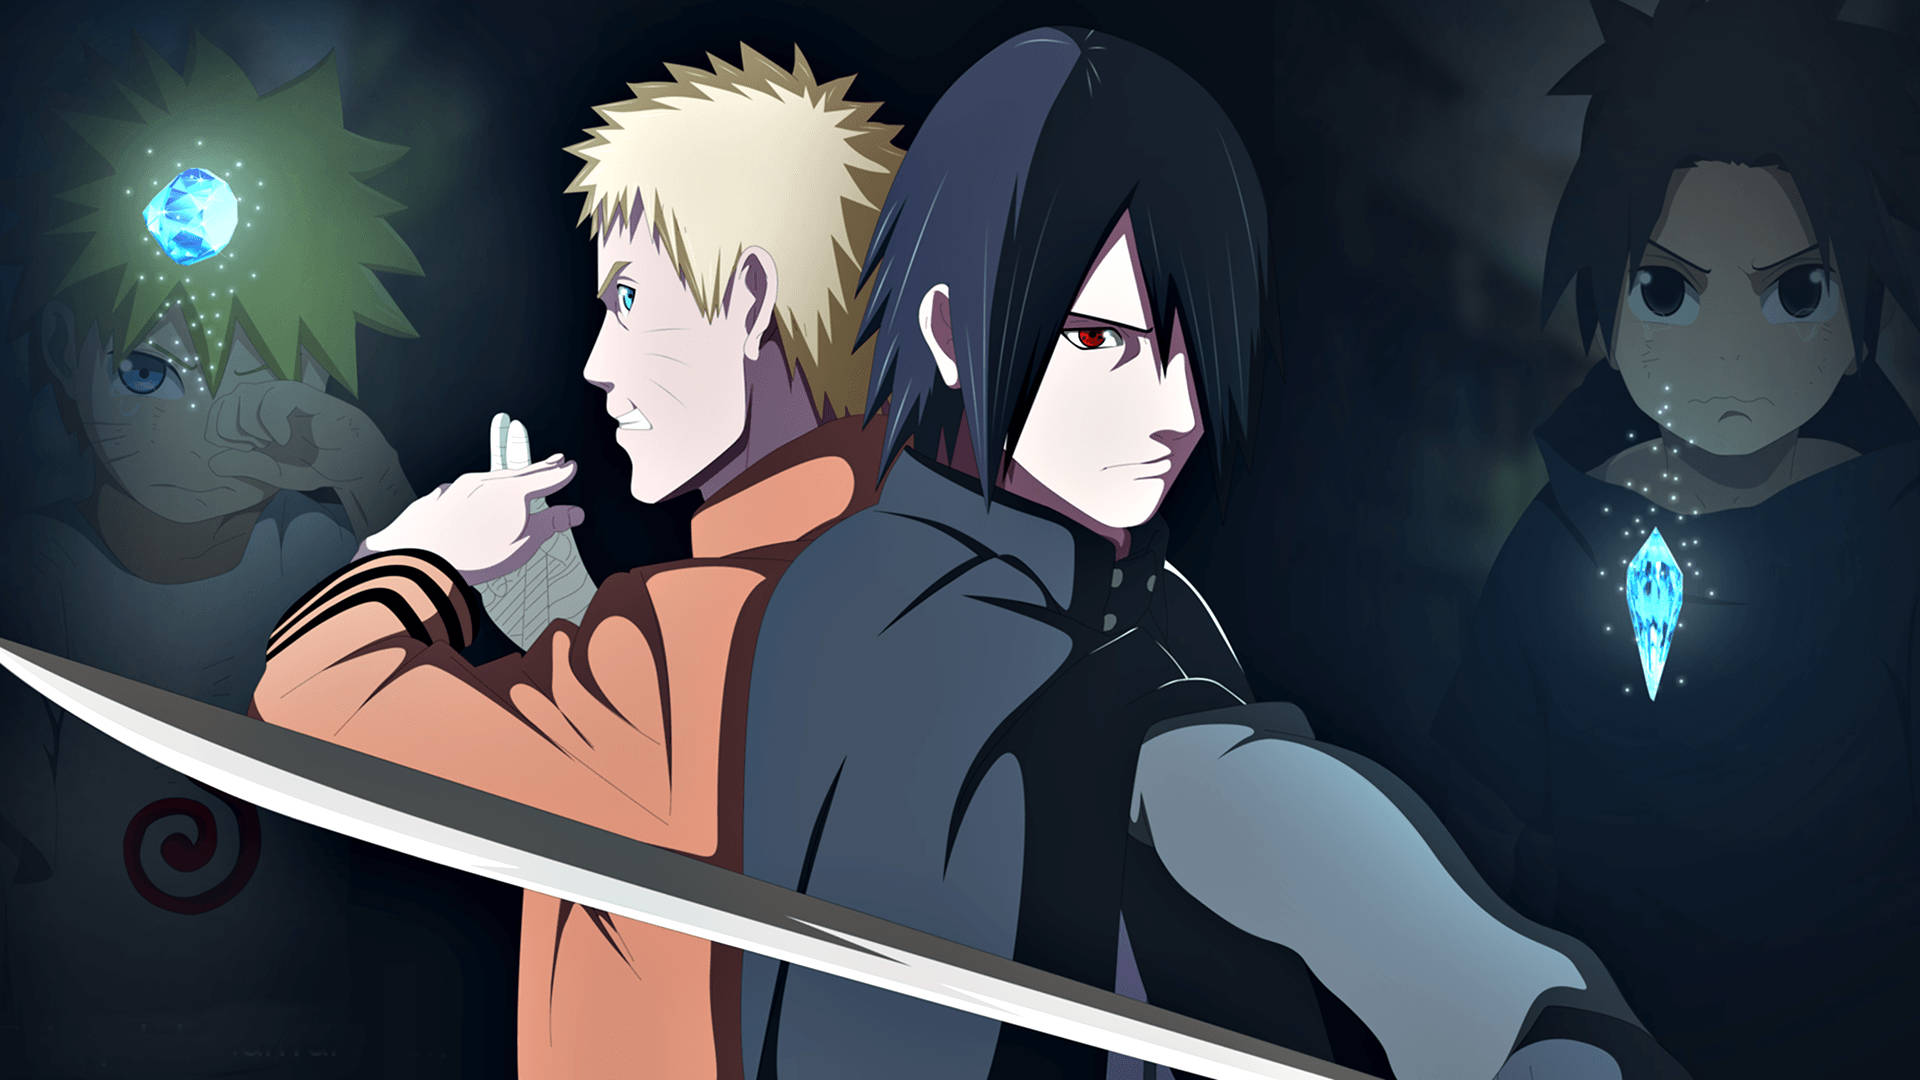 Anime Naruto And Sasuke Fighting Together Background